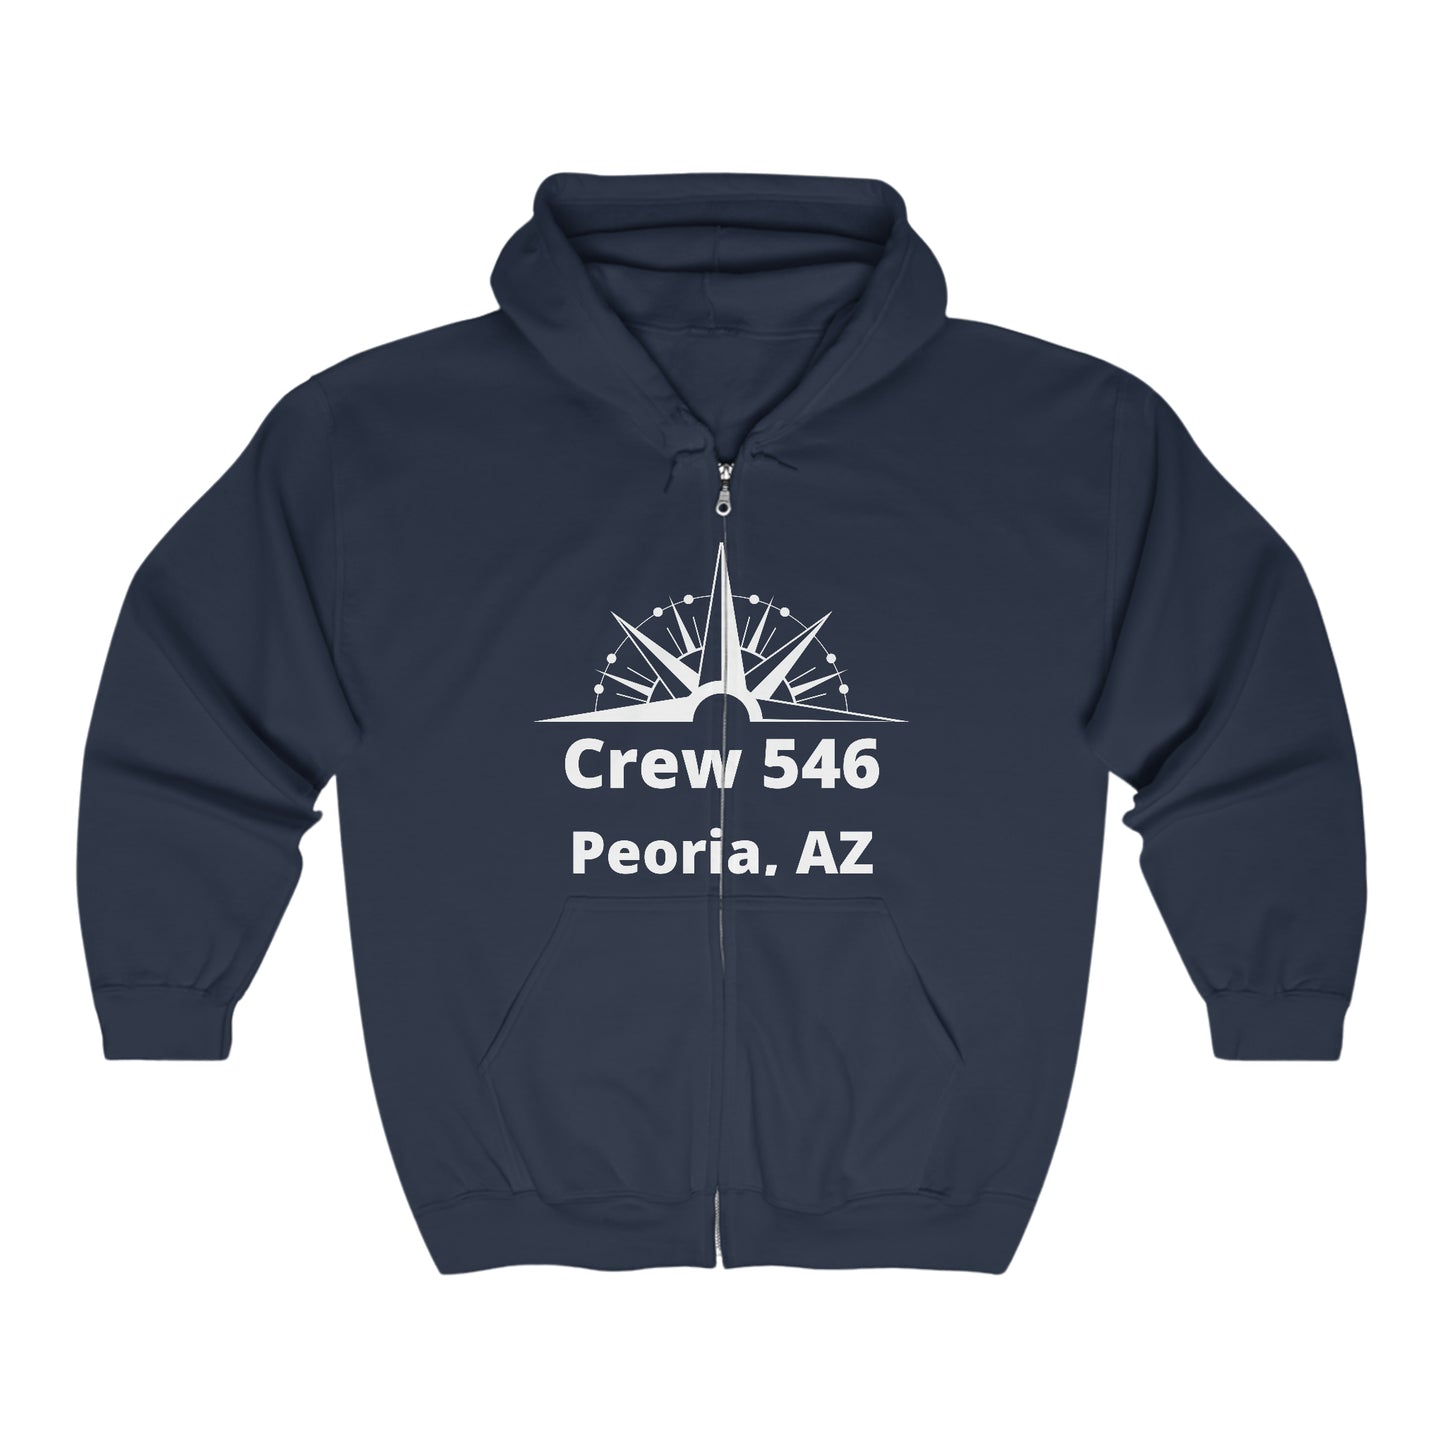 Crew 546 - Full Zip Hooded Sweatshirt